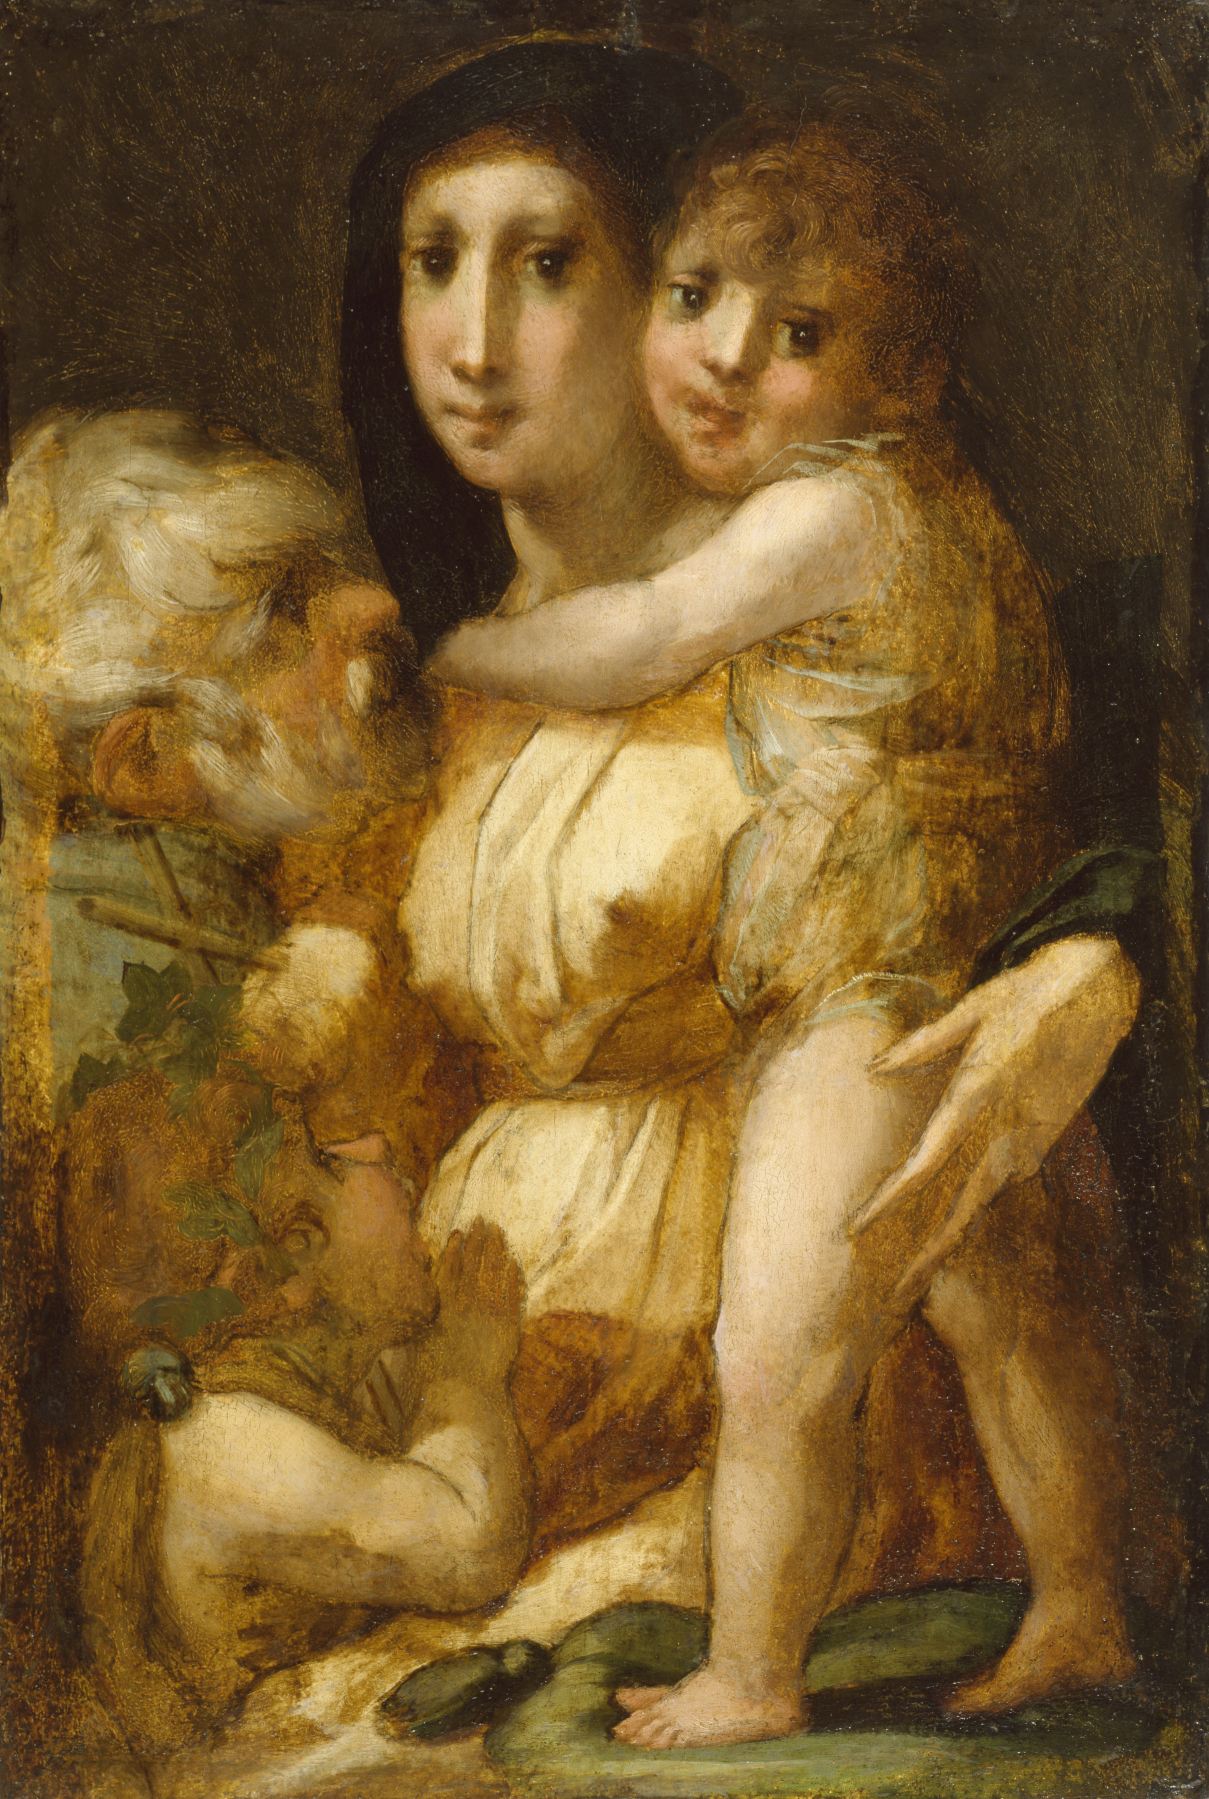 Rosso Fiorentino: A szent család a gyermek Keresztelő Jánossal (forrás: Wikipedia)